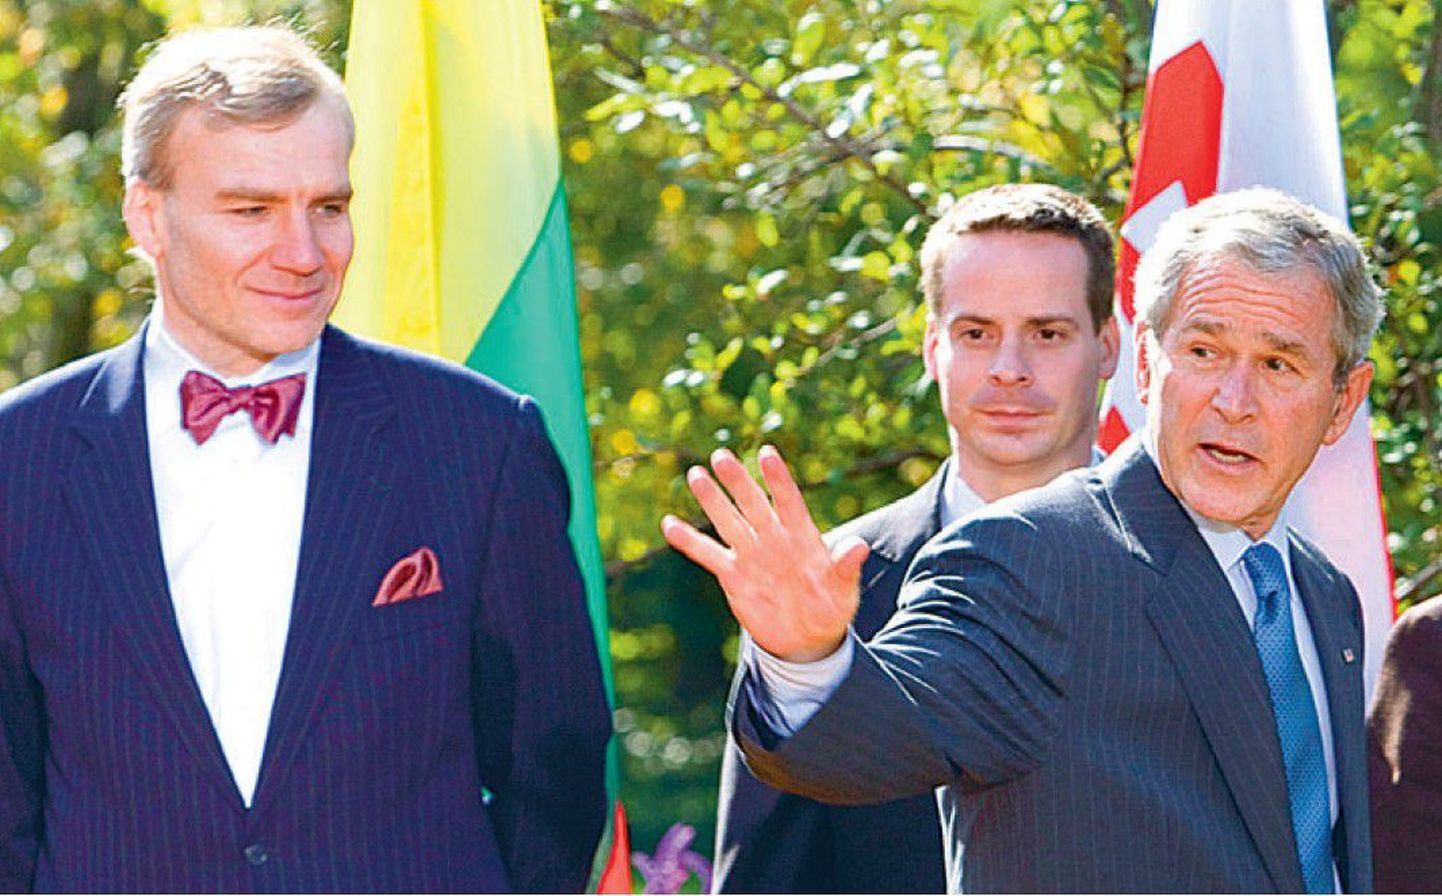 USA riigipea George W. Bush (paremalt) tegi viisavabaduse teatavaks riikide suursaadikutele. Uudist kuulsid eile ka Slovakkia saadik Andrej Droba ja Eesti suursaadik Väino Reinart.